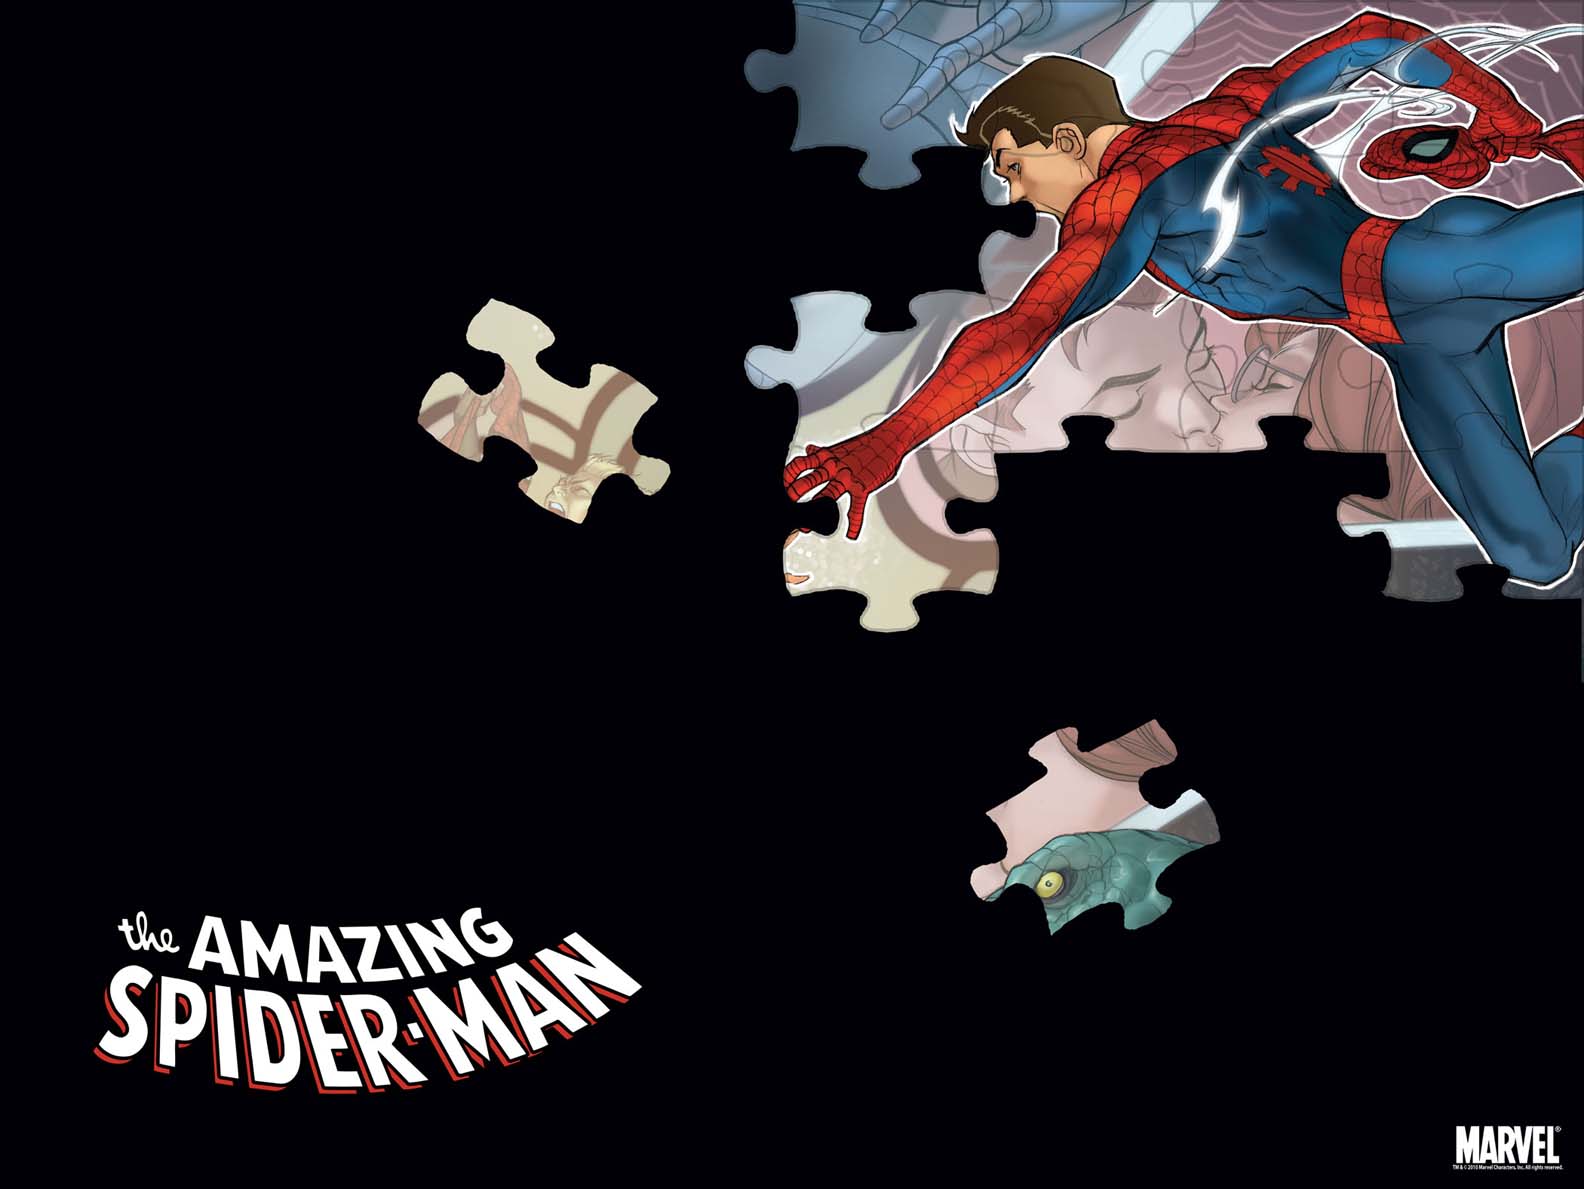 Spider-Man in 2010